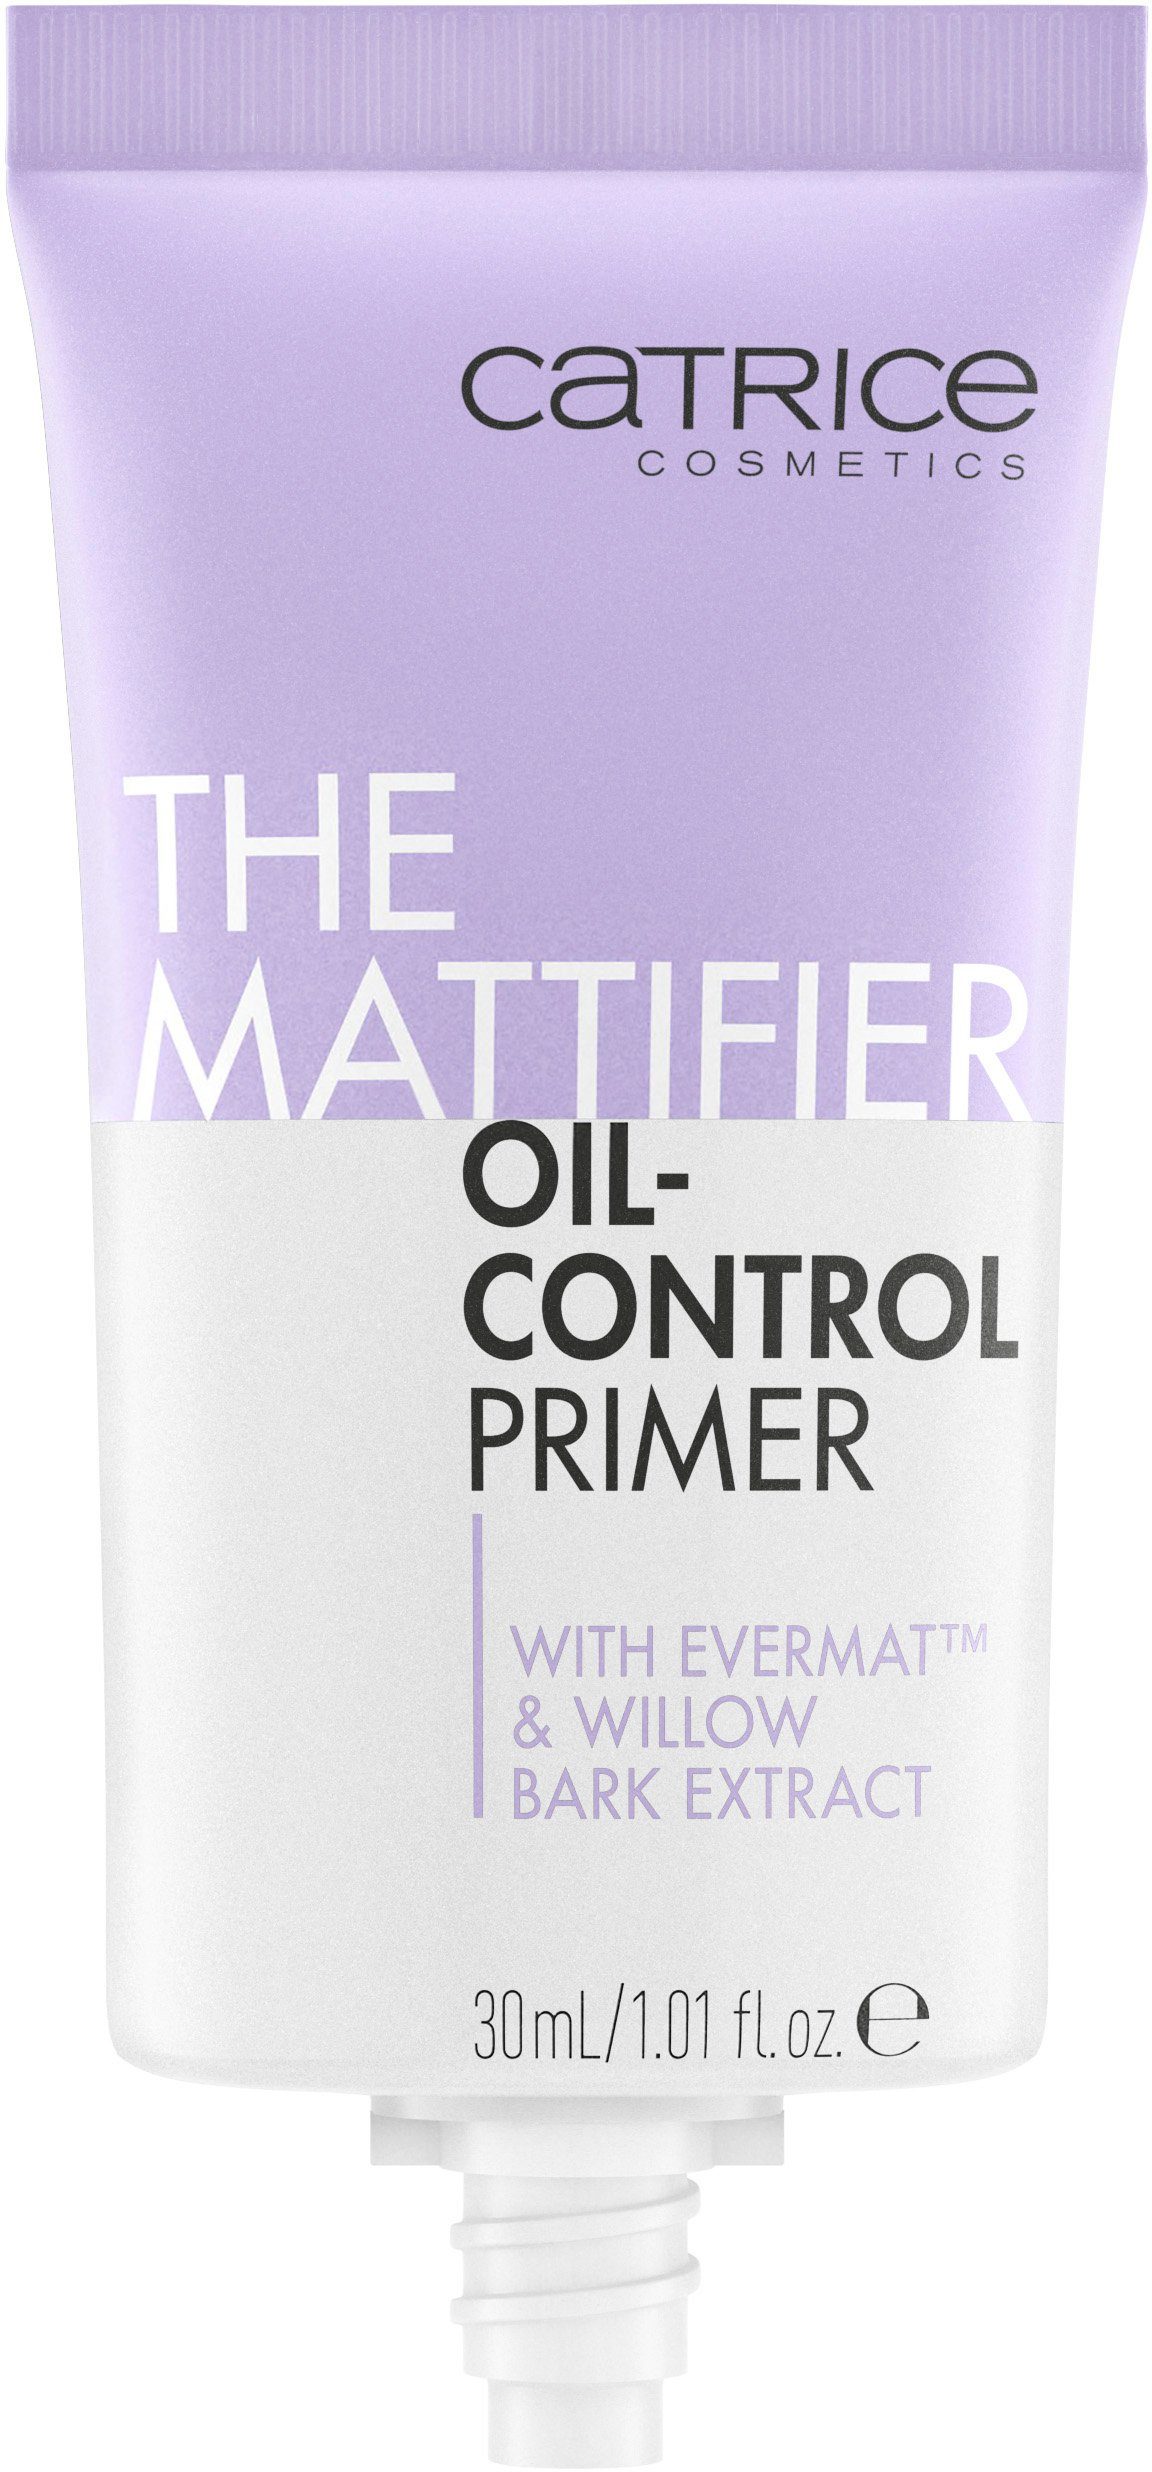 Primer The Mattifier Primer, Oil-Control Catrice